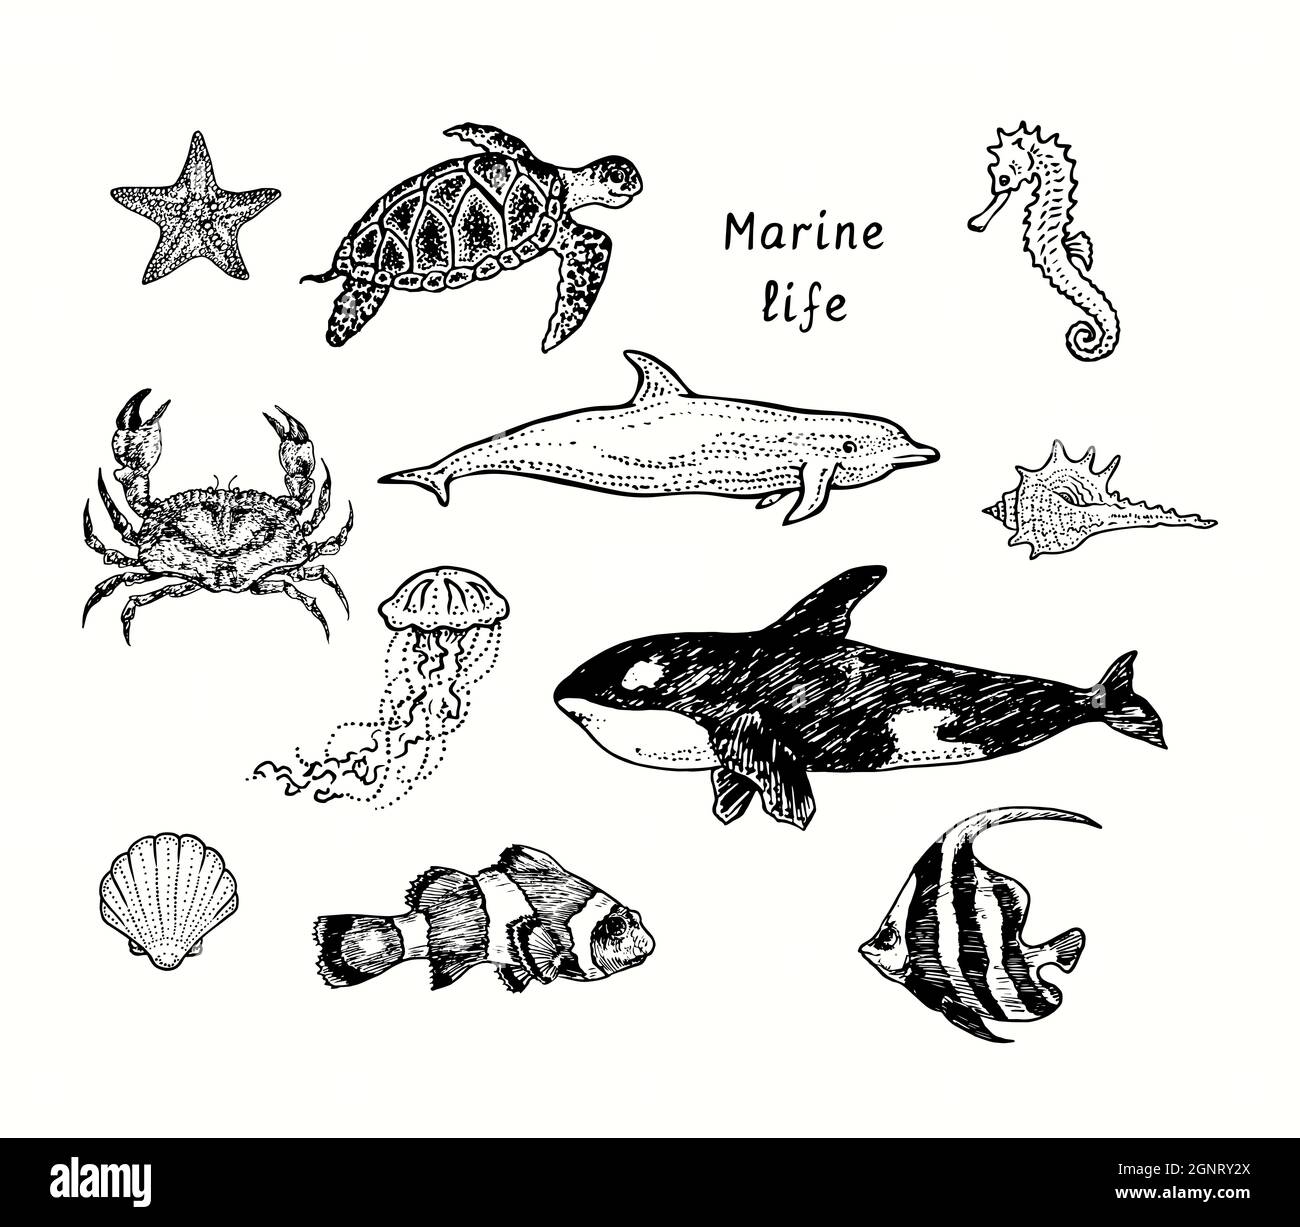 Collection de vie marine,Sea star,Sea Turtle Chelonioidea,Crab,Orca, dauphin à bottlenose, méduses, hippocampe, coquillages,Clownfish, école de bannerfish Banque D'Images